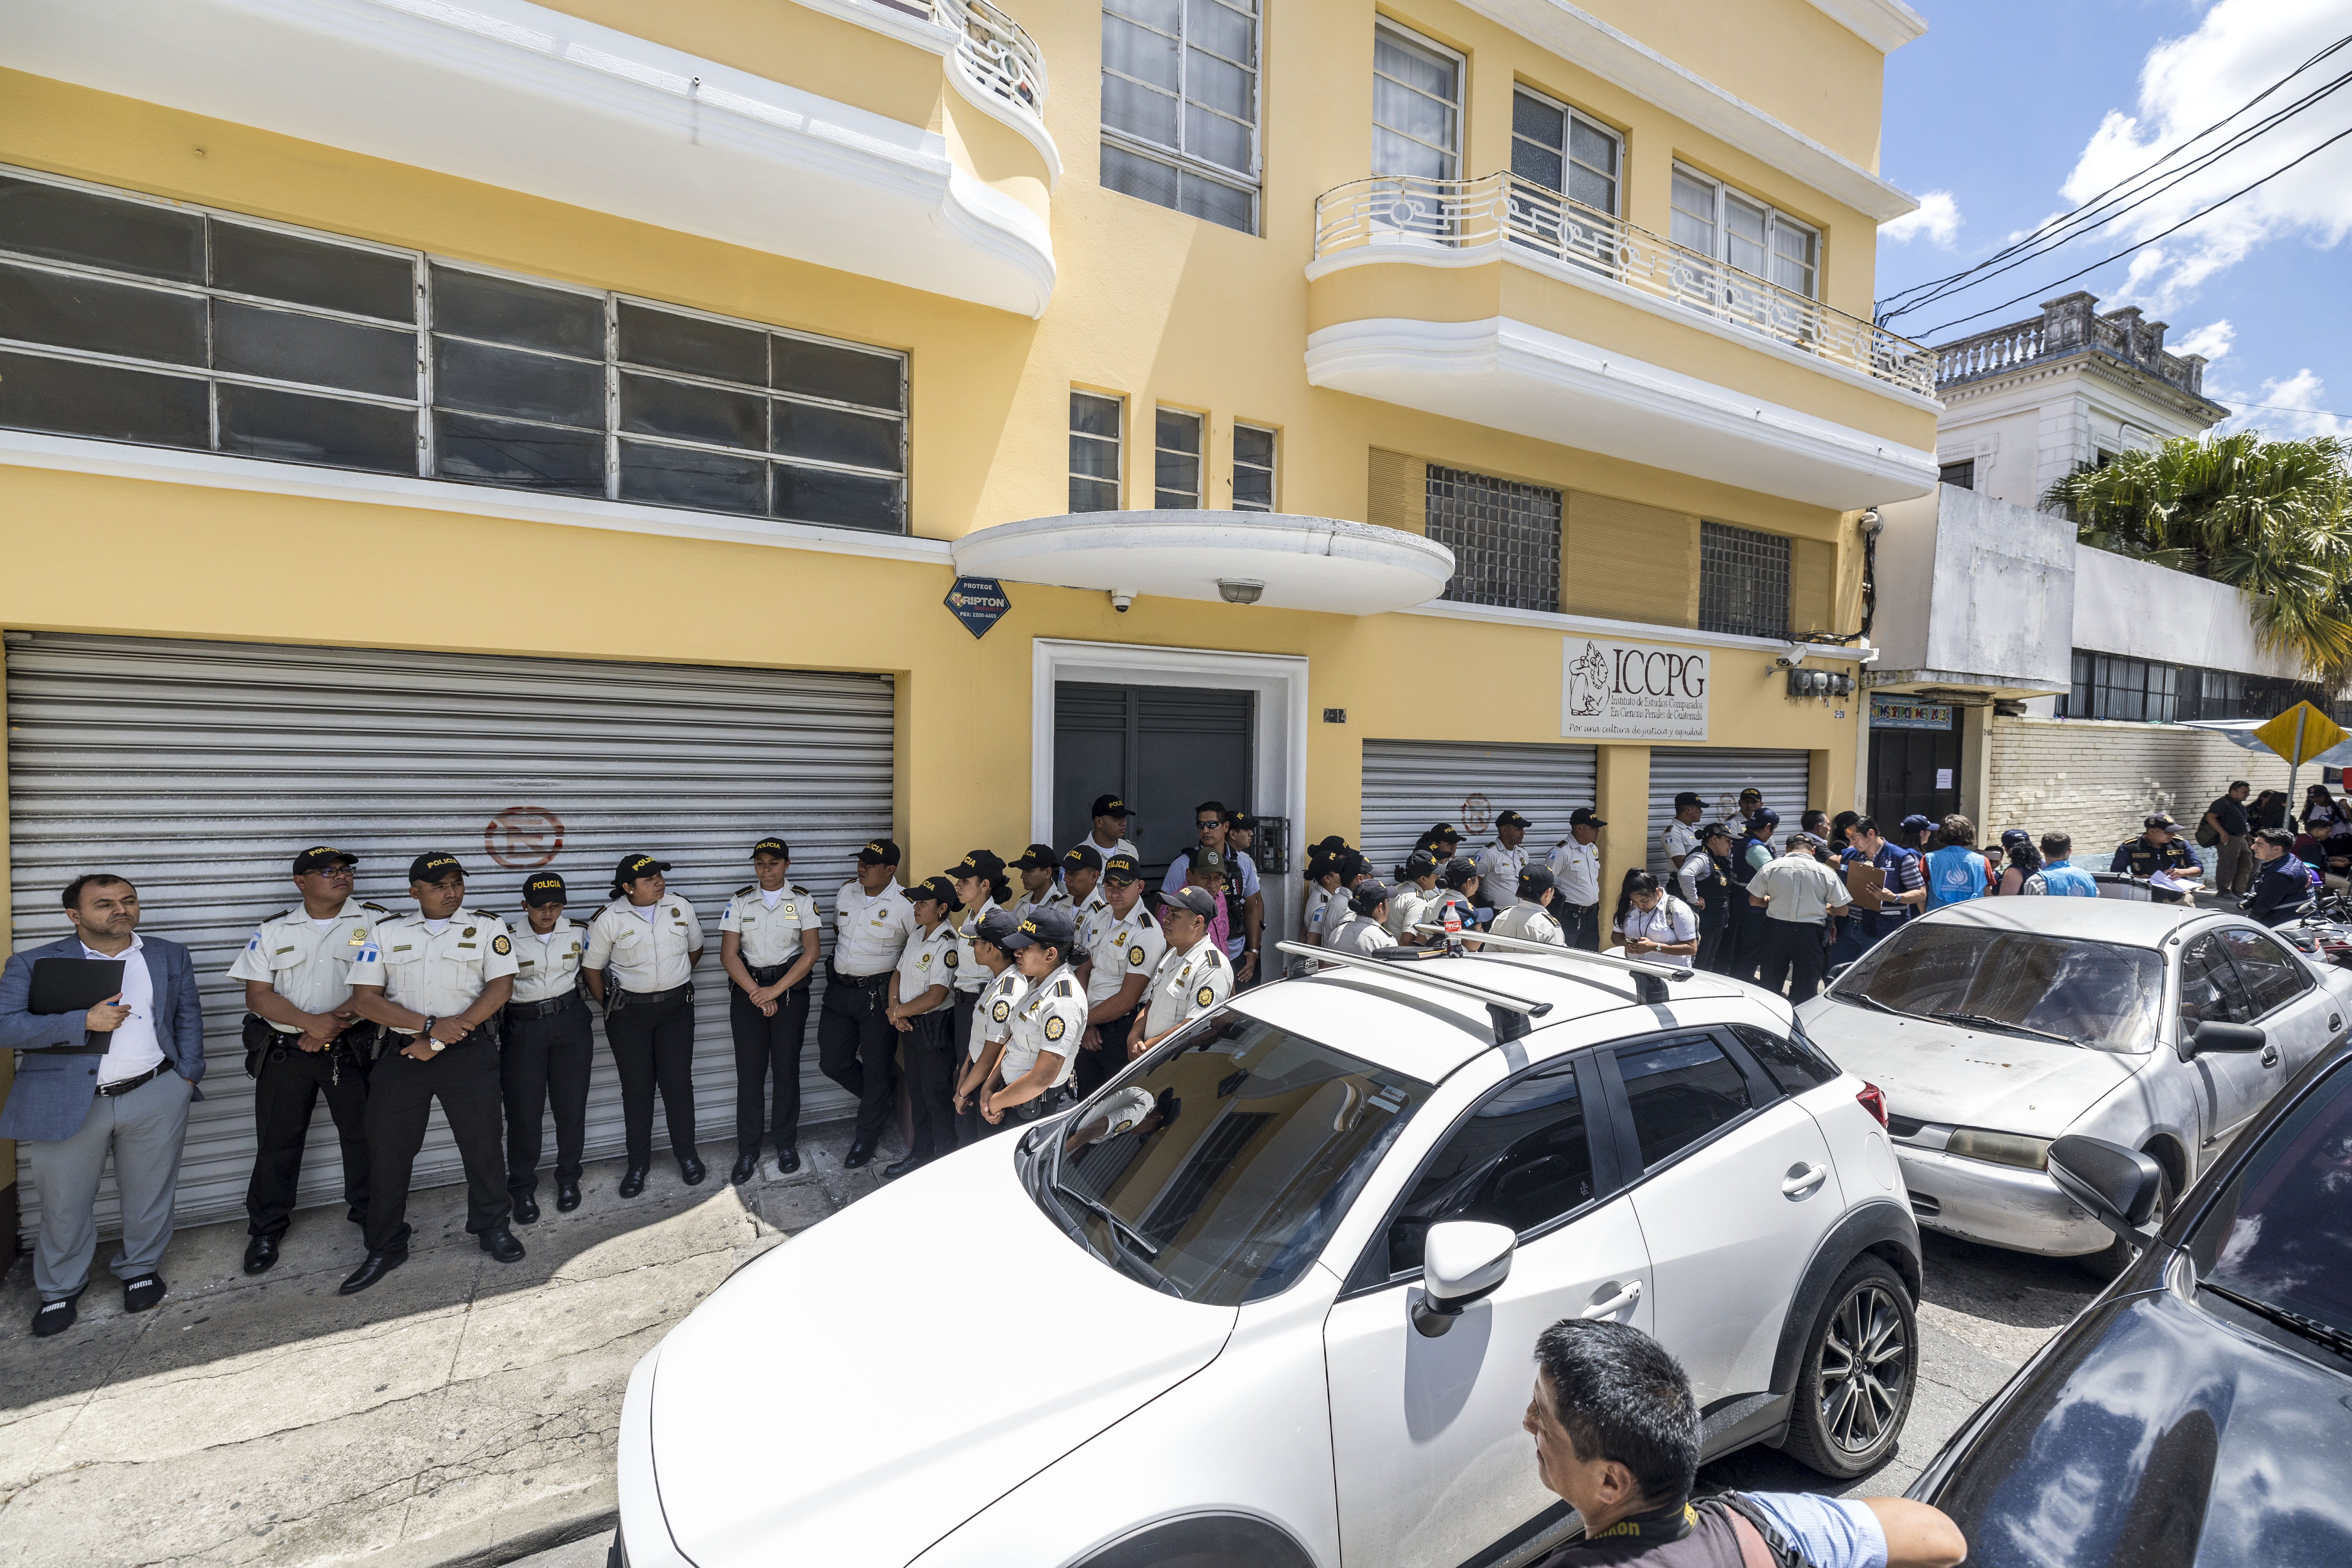 La sede central del partido Movimiento Semilla fue allanada por fiscales del Ministerio Público en busca de indicios por un supuesto caso de corrupción. (Foto Prensa Libre: EFE / Esteban Biba)